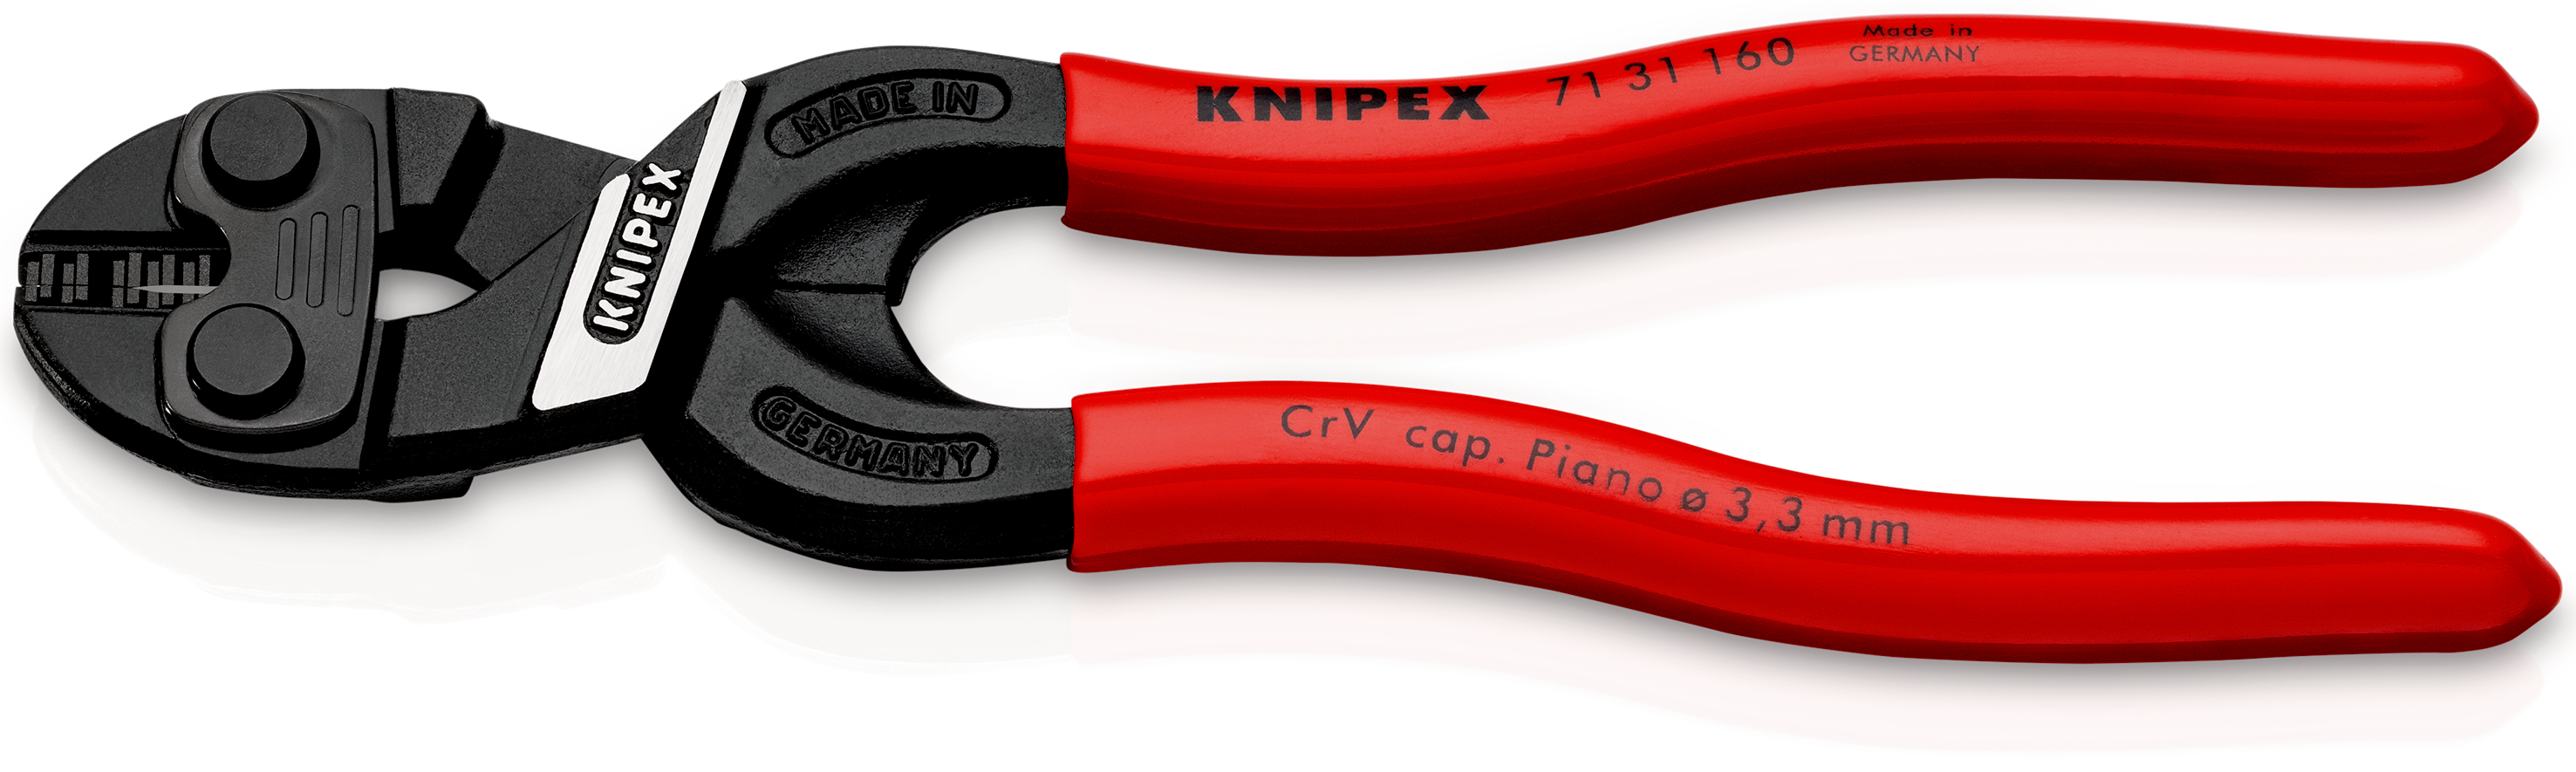 Knipex 7131160 CoBolt® S Tăietor compact pentru bolțuri cu degajare în muchia de tăiere, manere acoperite cu plastic, lungime 160 mm